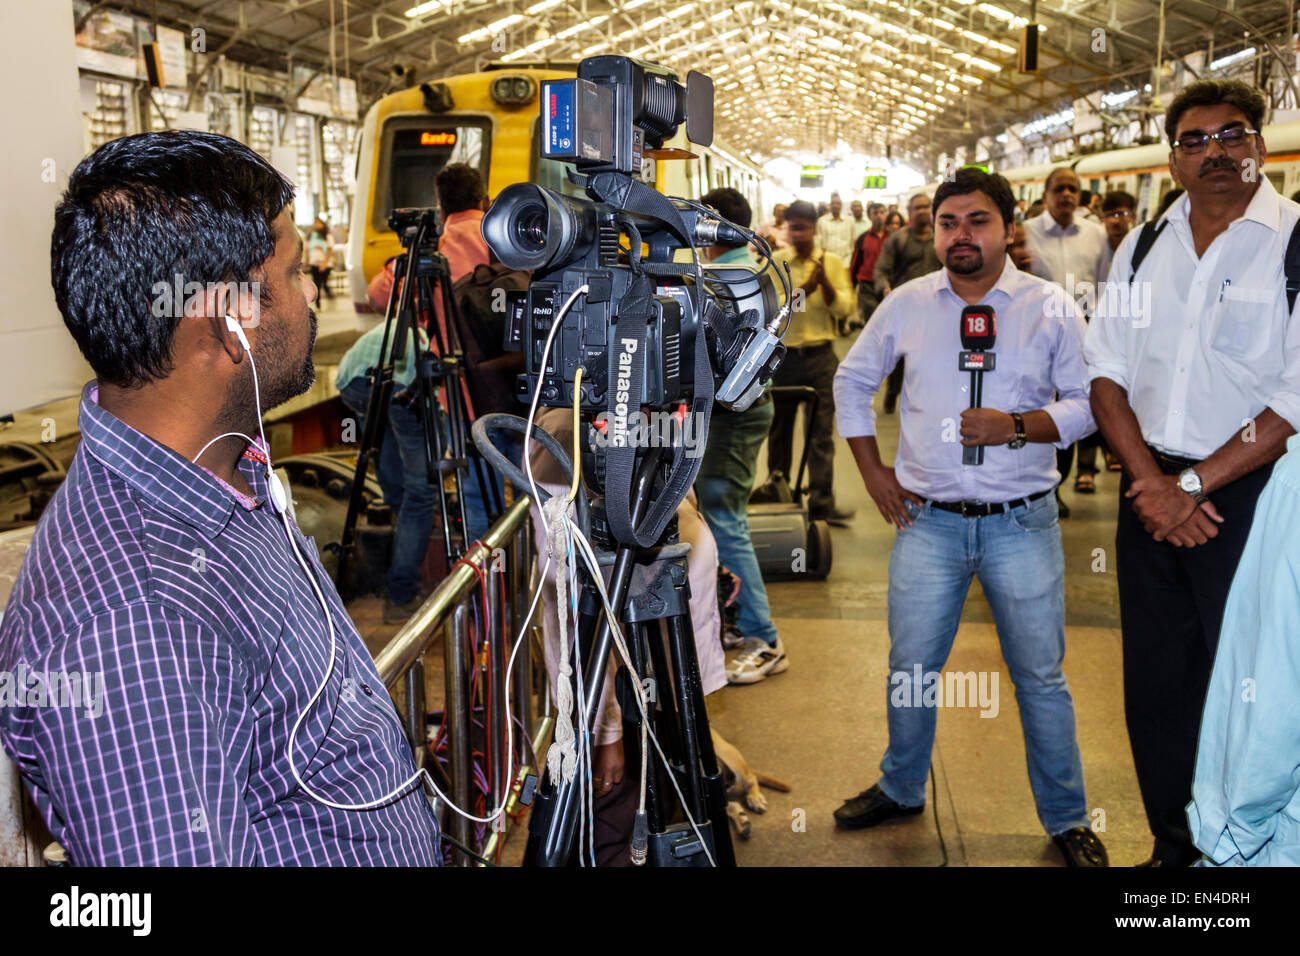 Mumbai India,Stazione ferroviaria Asiatica Churchgate,linea occidentale,treno,macchina fotografica,videocamere,videocam,uomo uomo maschio,giornalista,reporter,media,intervista Foto Stock